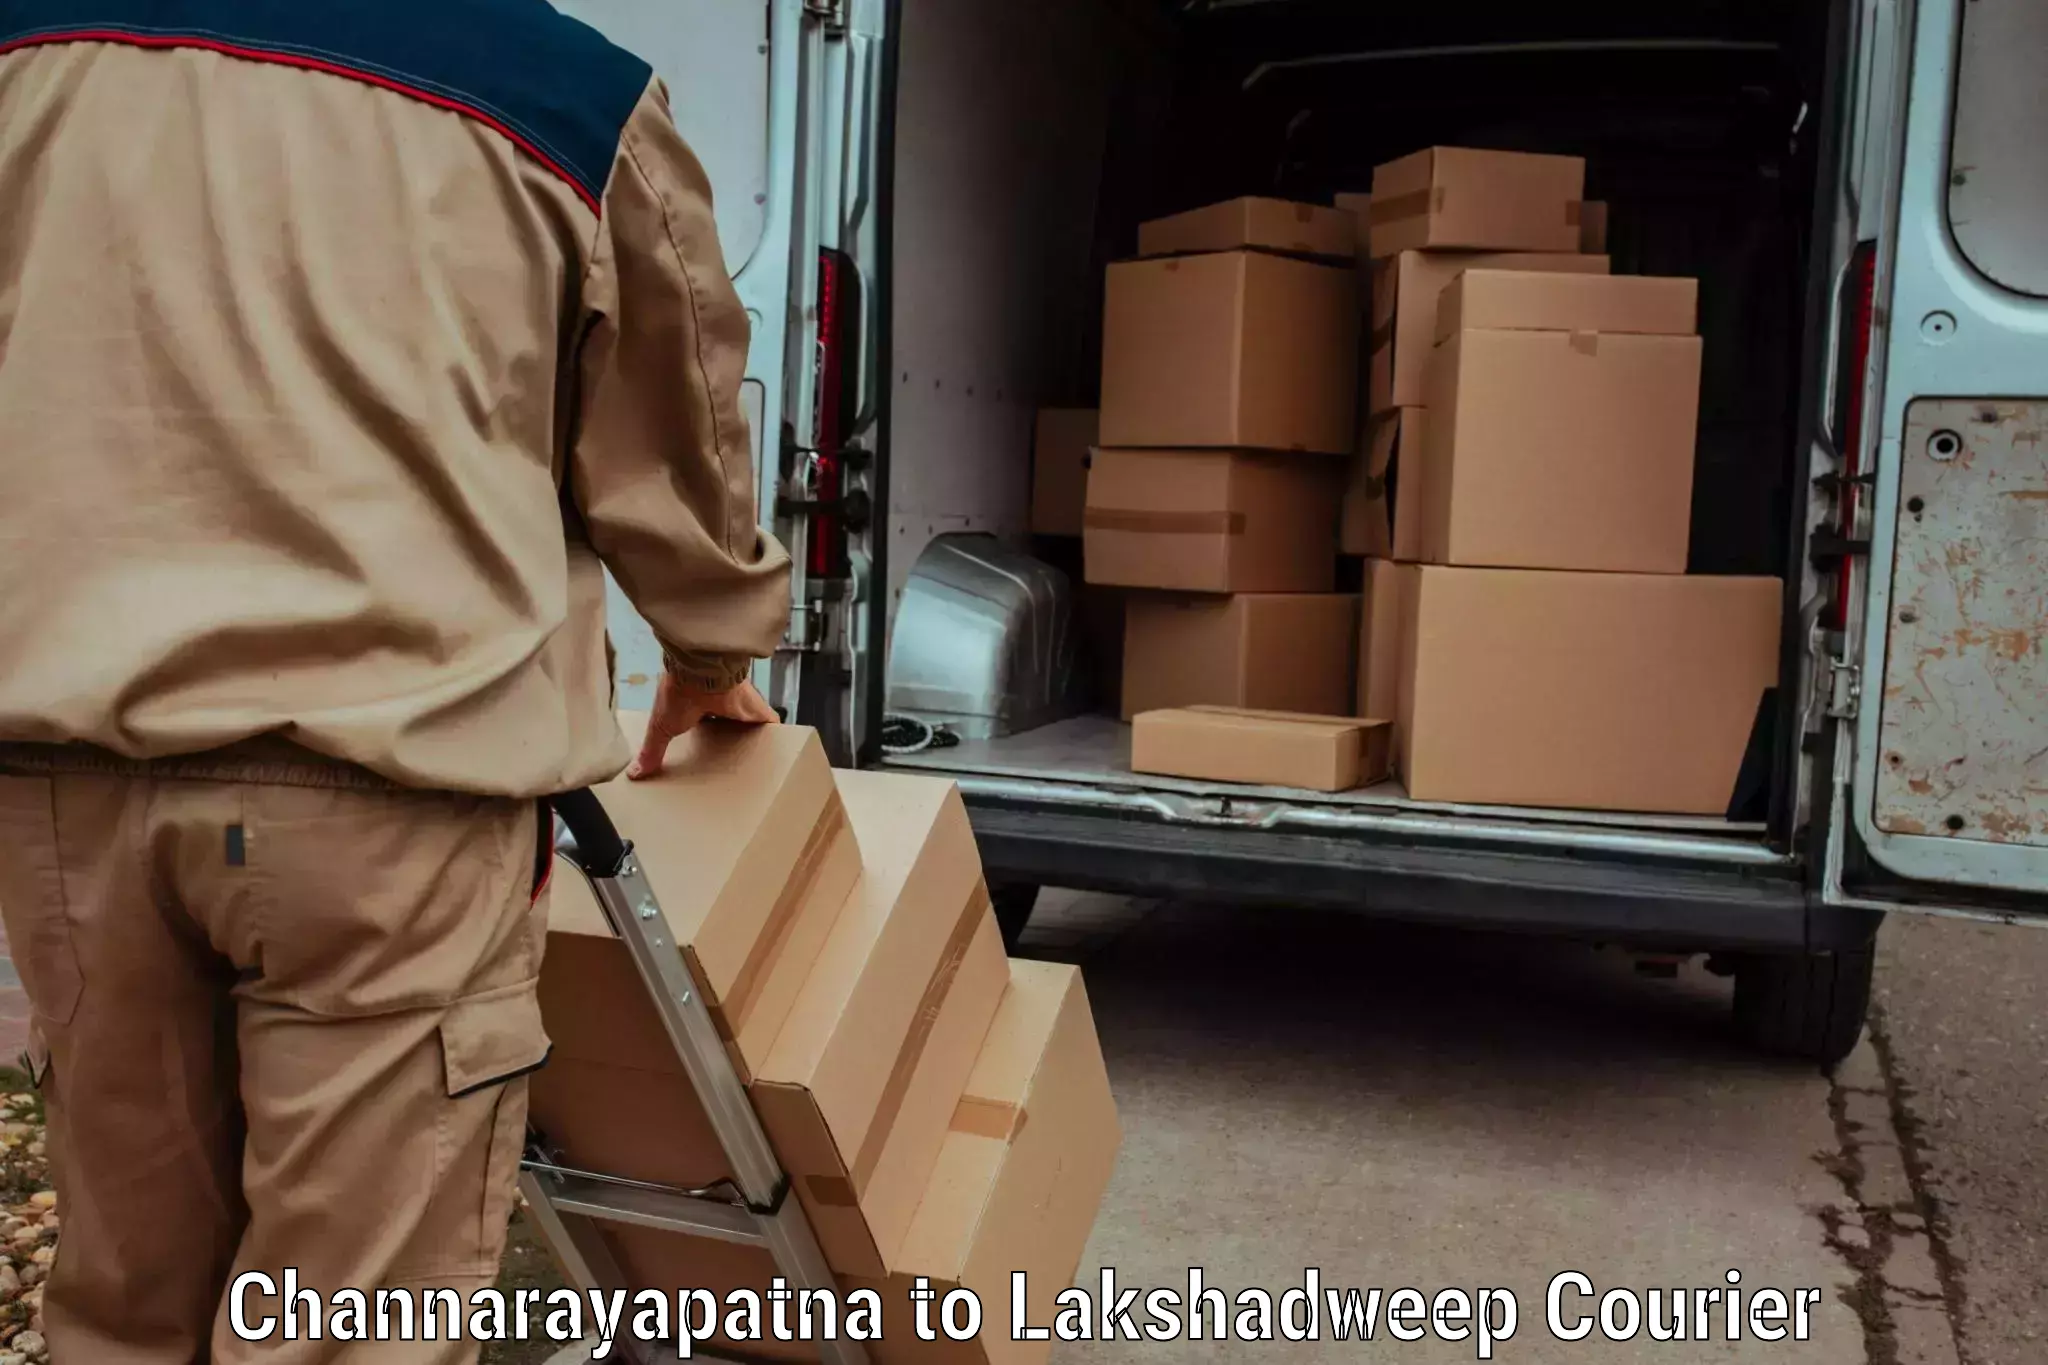 Baggage shipping optimization Channarayapatna to Lakshadweep